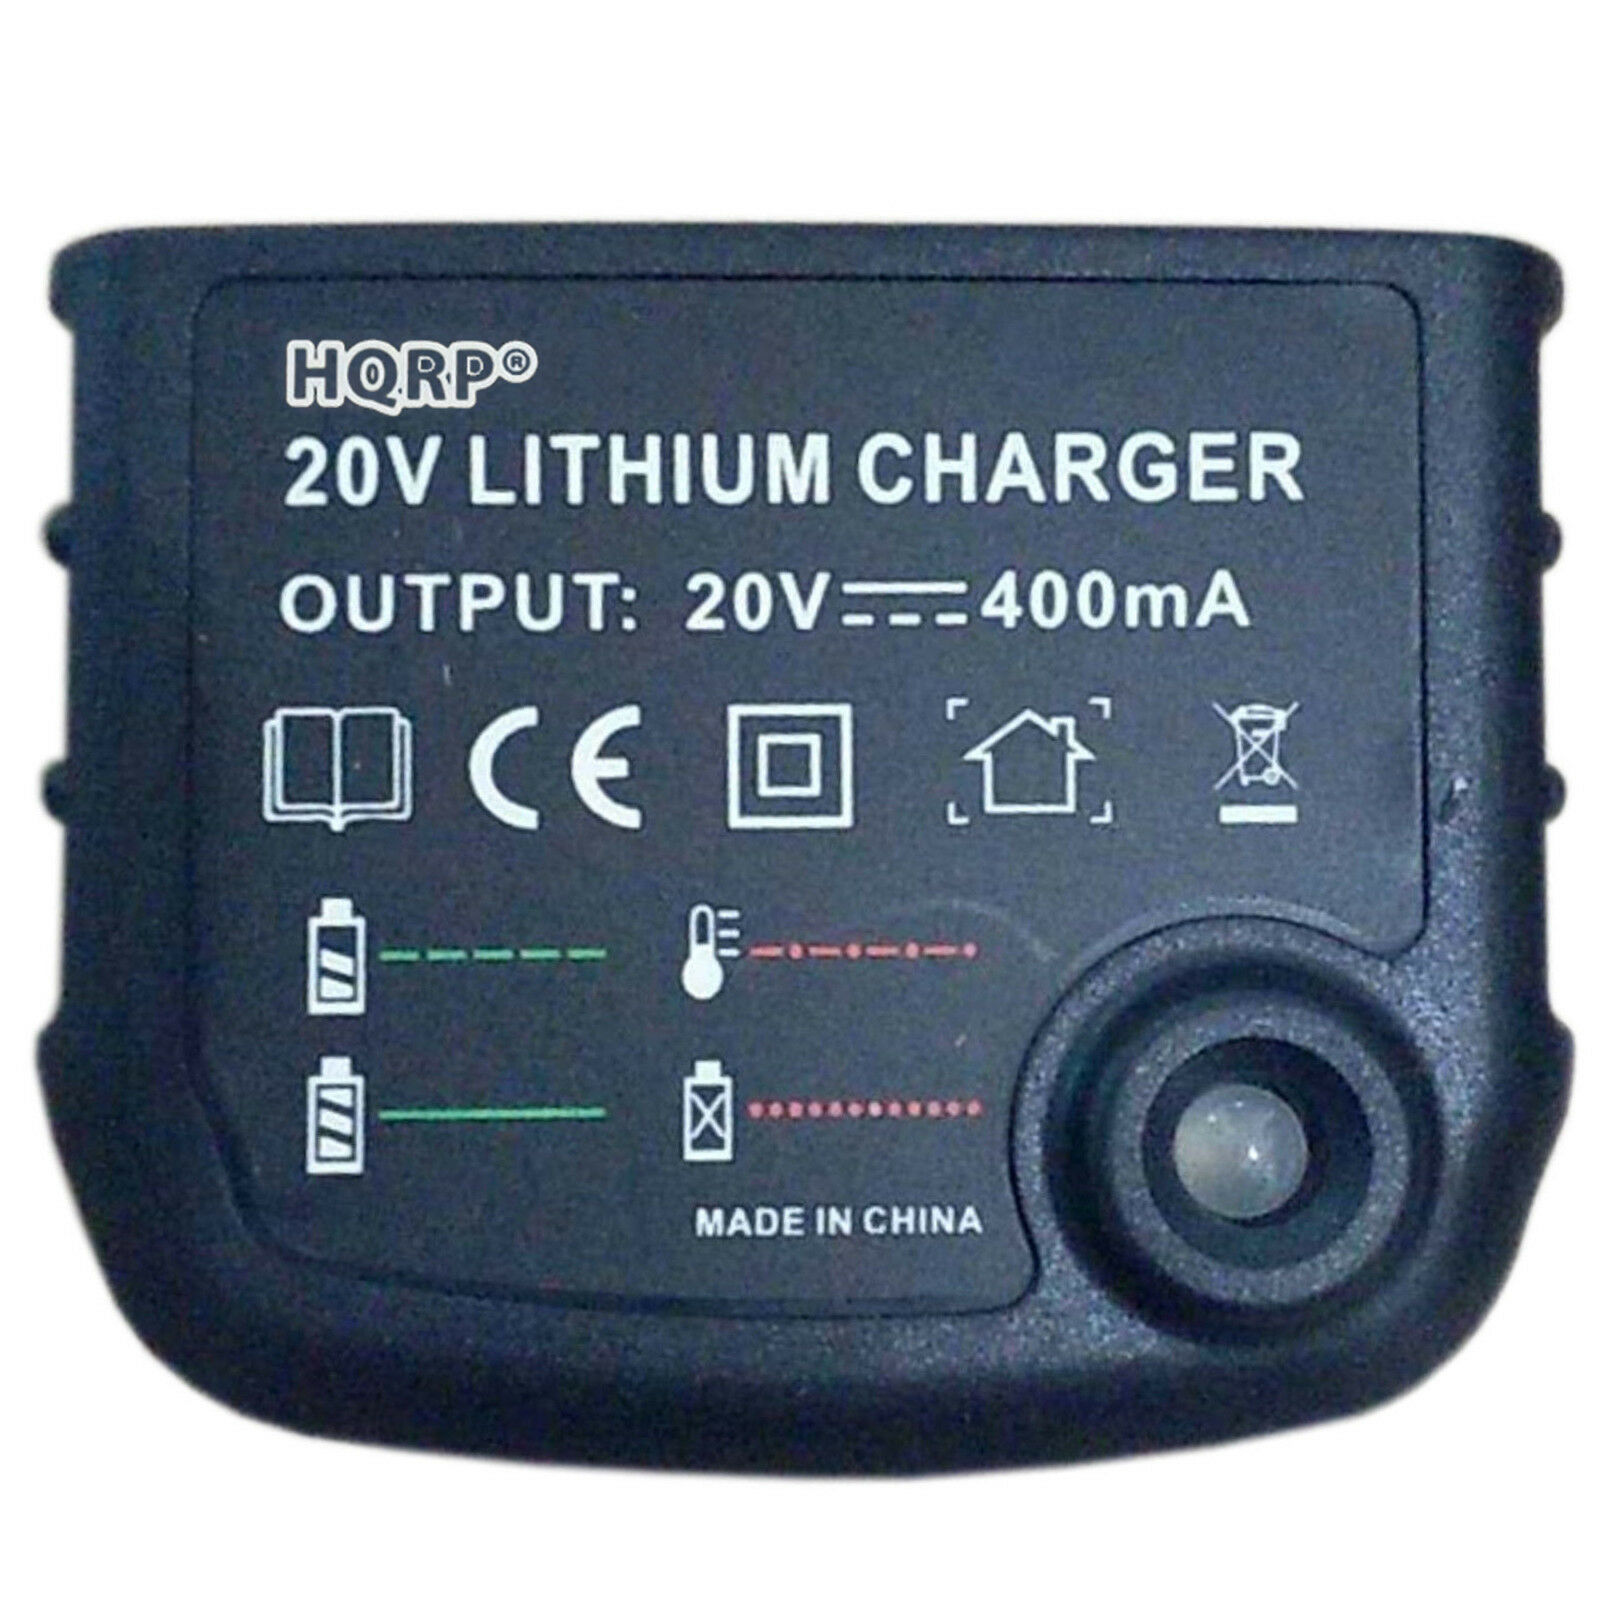 HQRP 20V Li-Ion Battery Charger Compatible with Black and Decker LDX120C  LDX120PK LDX120SB LDX220SB SSL20SB SSL20SB-2 BDCDE120C BDCDMT120  BDC120VA100